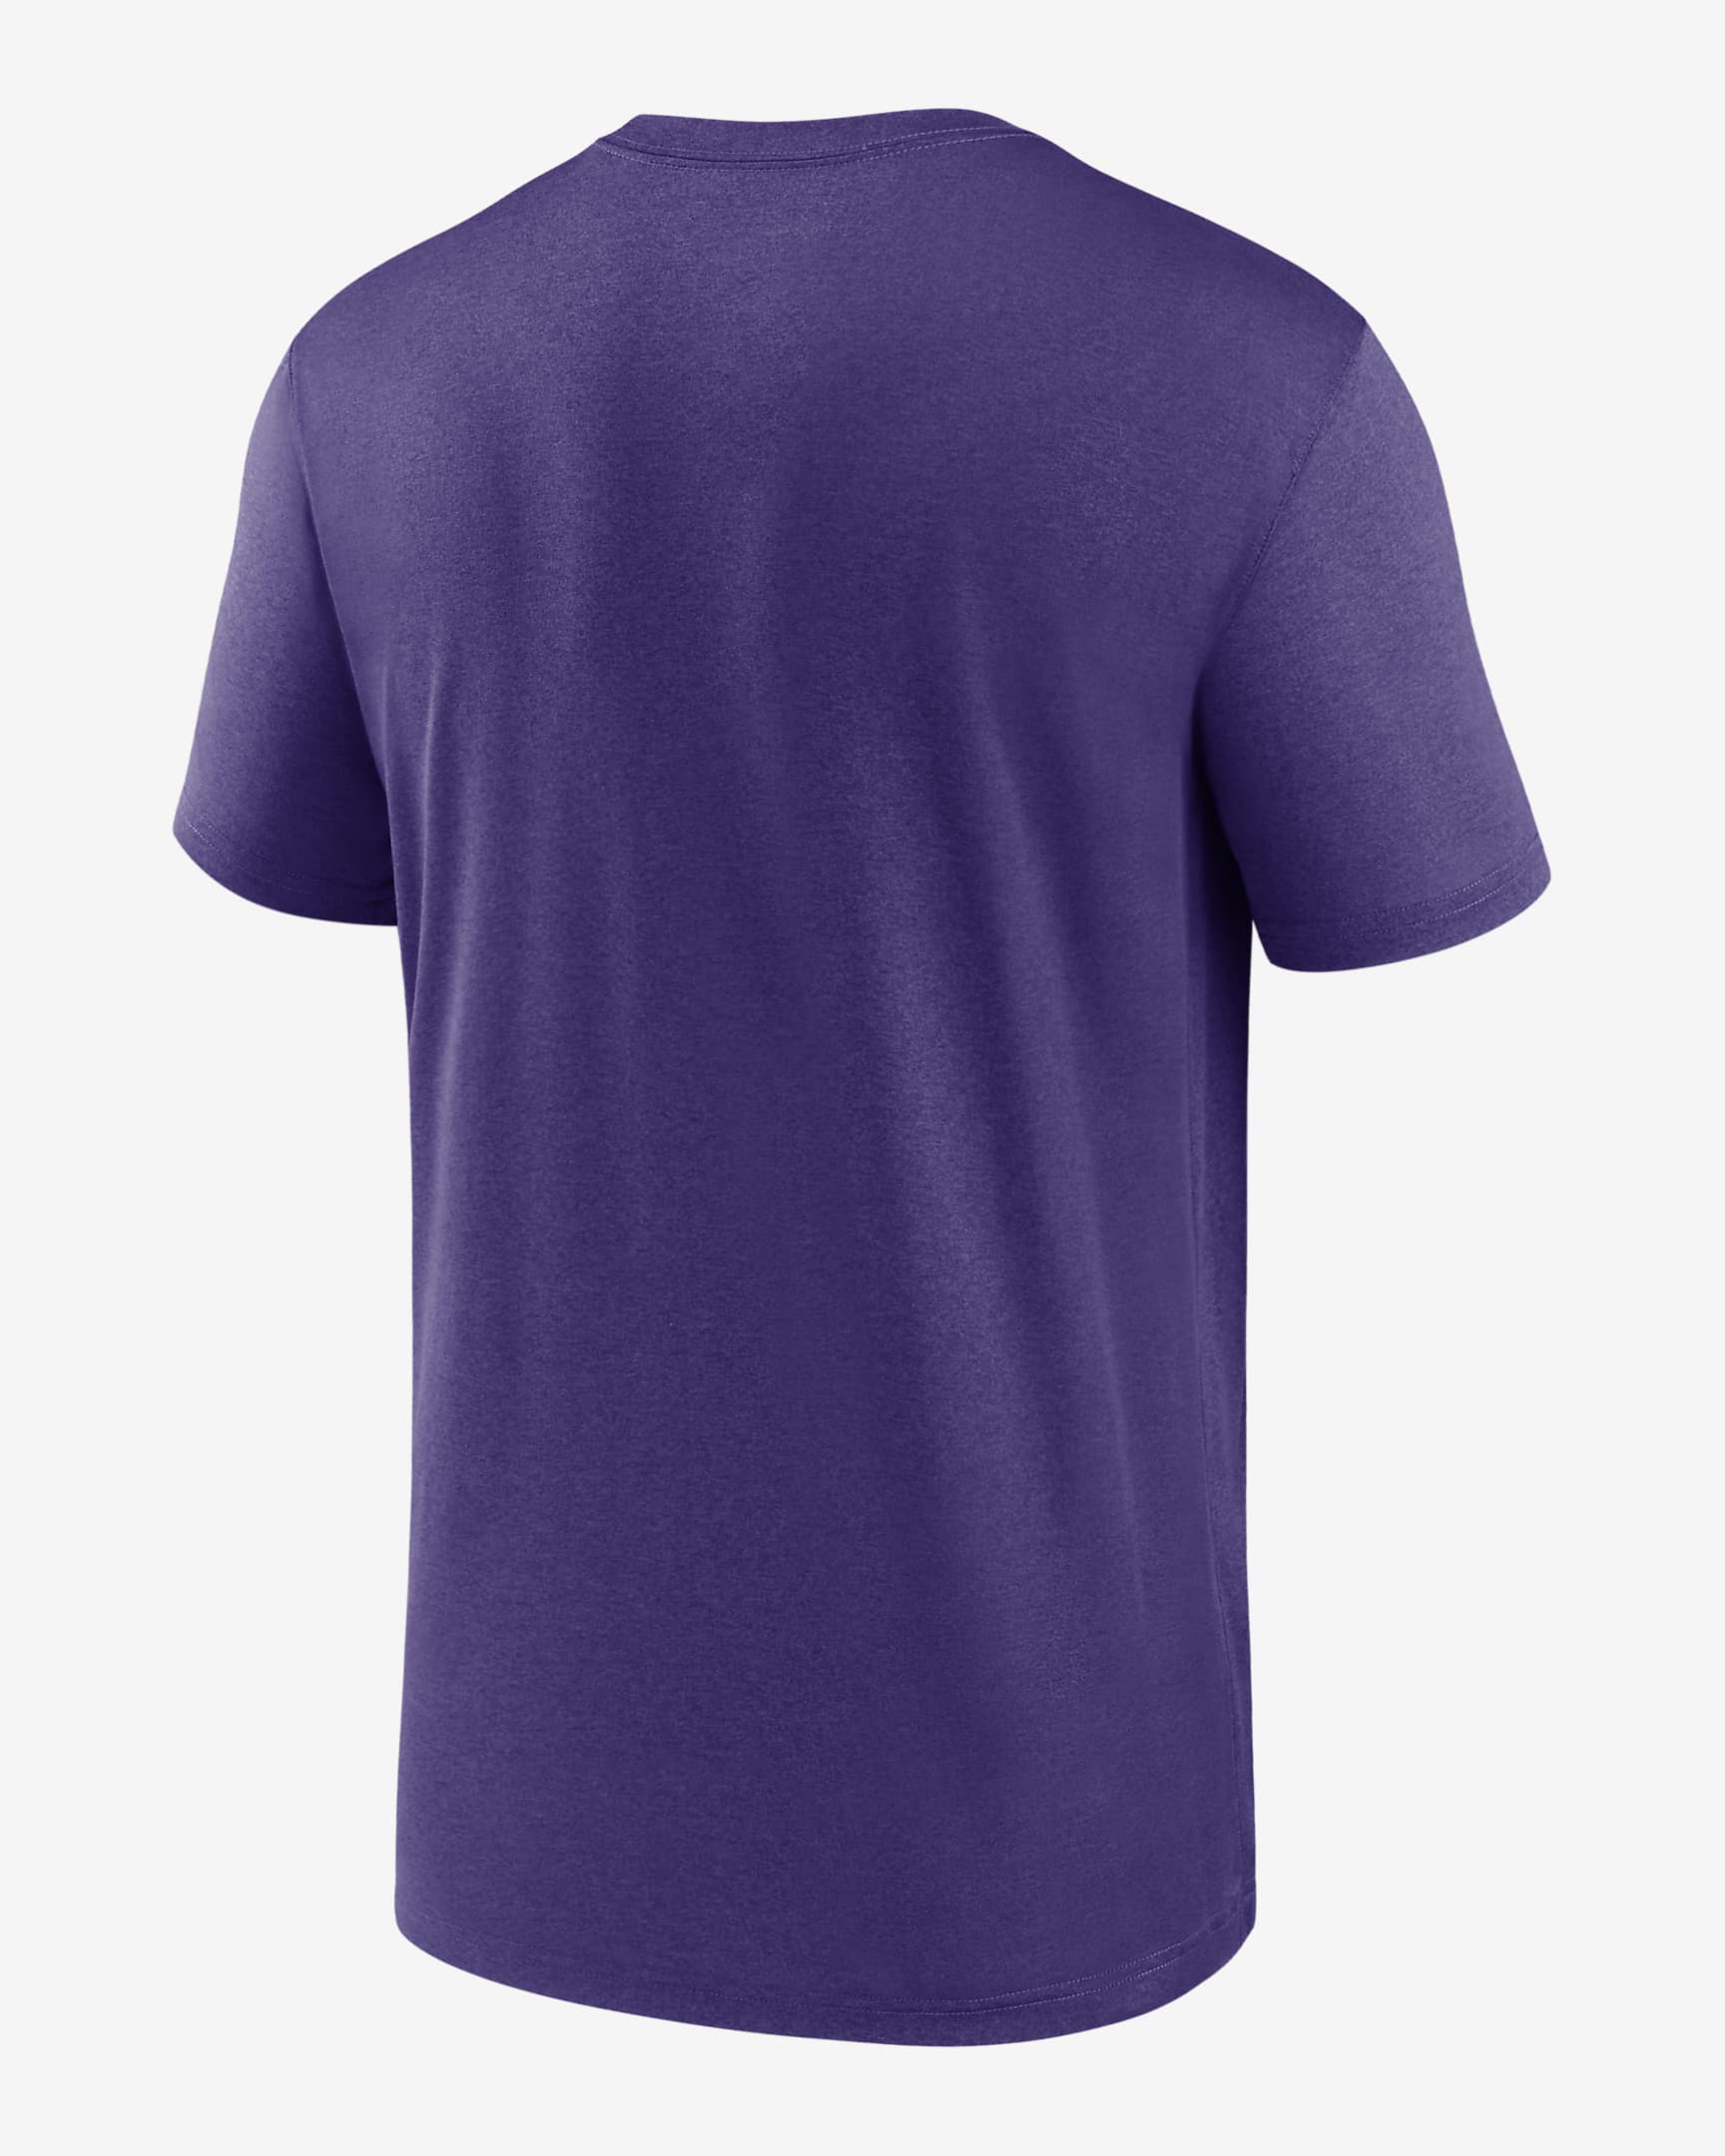 Nike Dri-FIT Logo Legend (NFL Minnesota Vikings) Men's T-Shirt. Nike.com